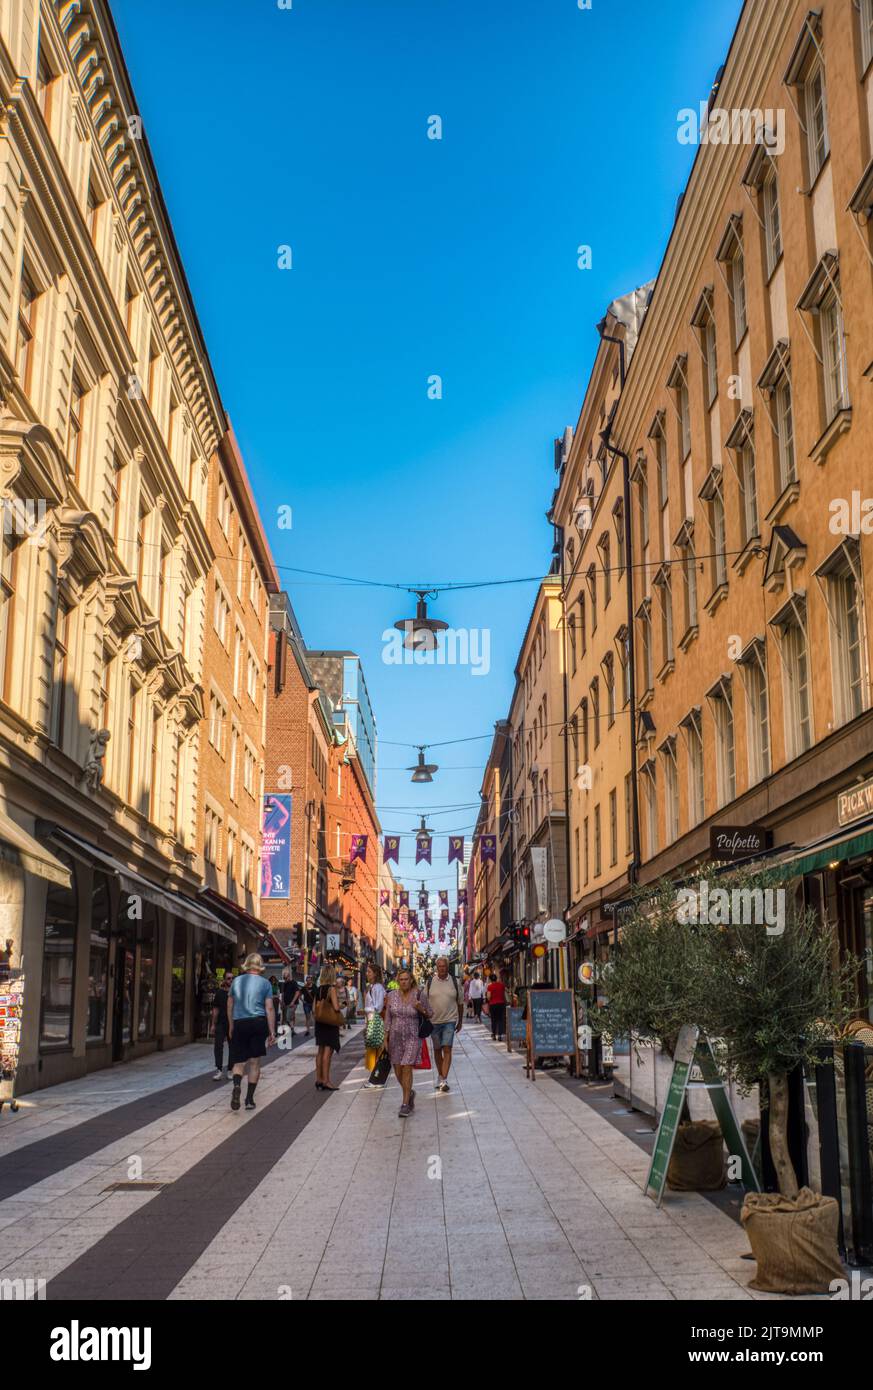 No hay vehículos. Calle comercial peatonal Drottninggatan, Estocolmo, Suecia Foto de stock